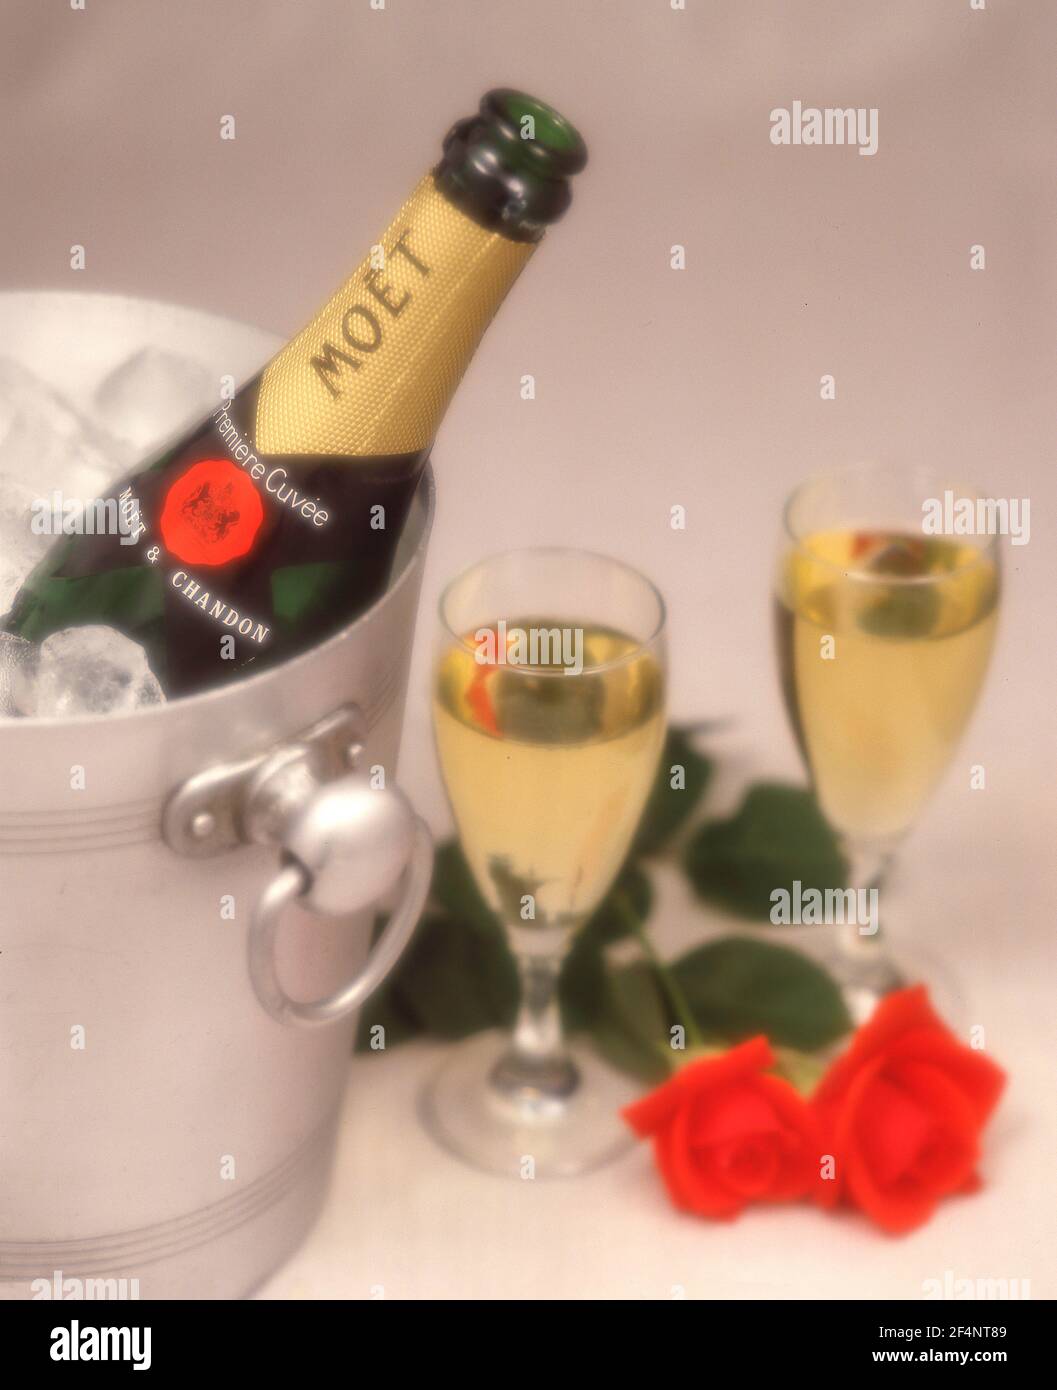 Champagner von Moët & Chandon im Eiskübel mit roten Rosen und Kristallgläsern, Greater London, England, Vereinigtes Königreich Stockfoto